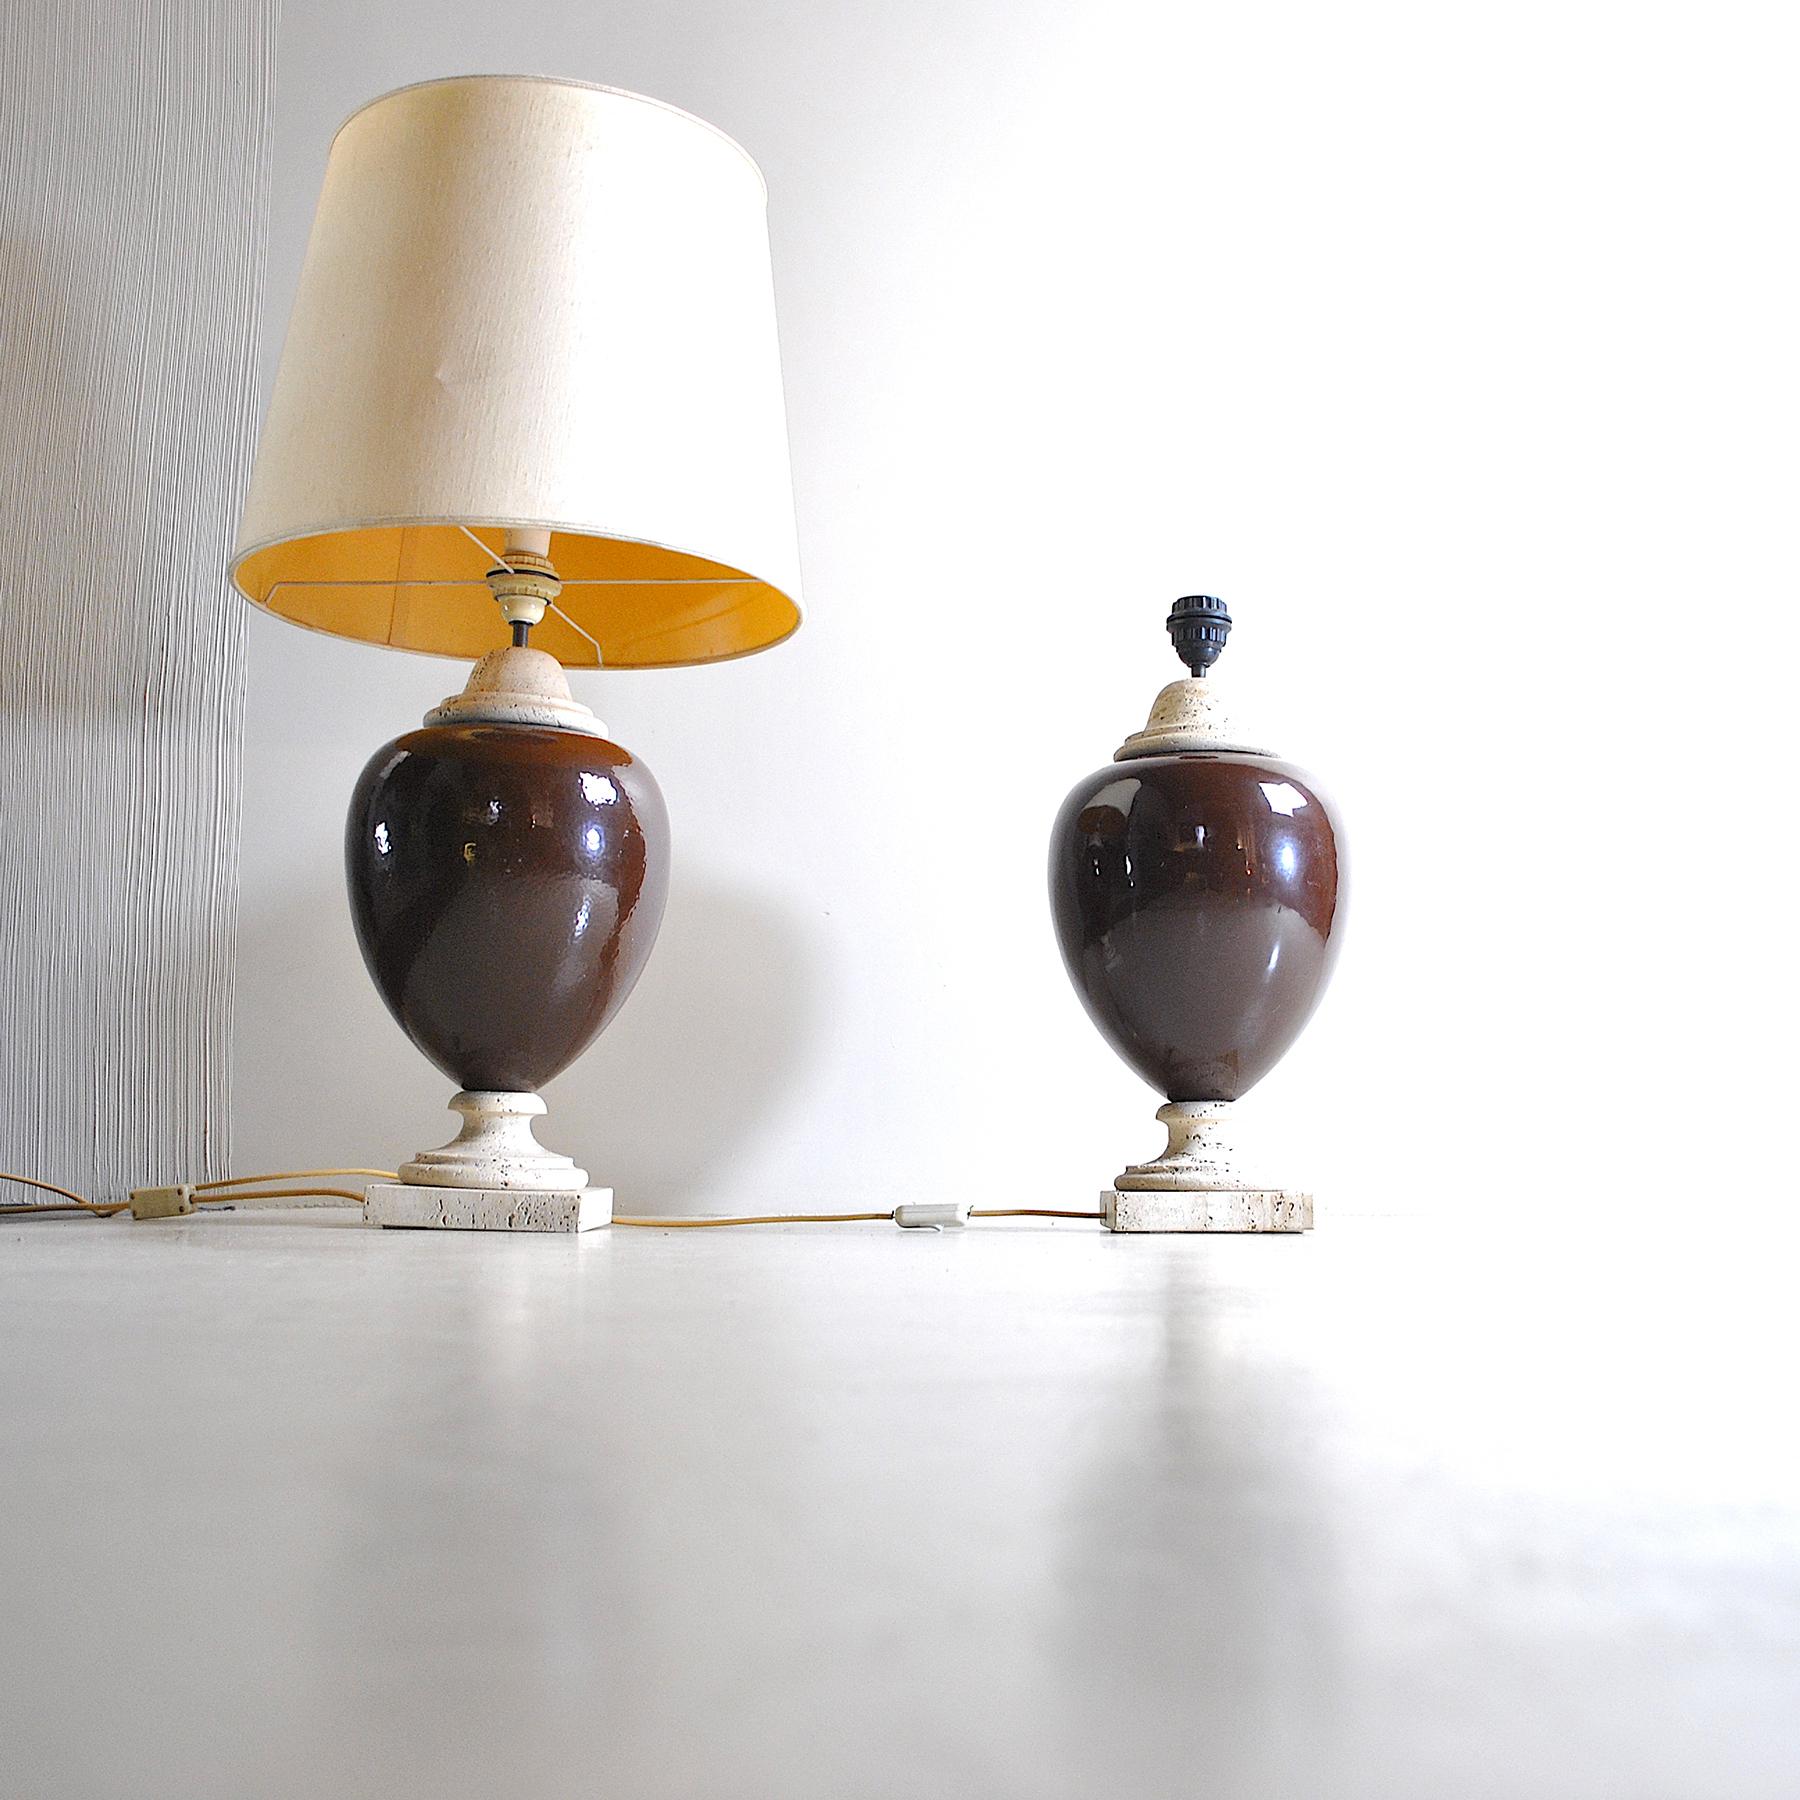 Ceramic Italian Midcentury Table Lamps